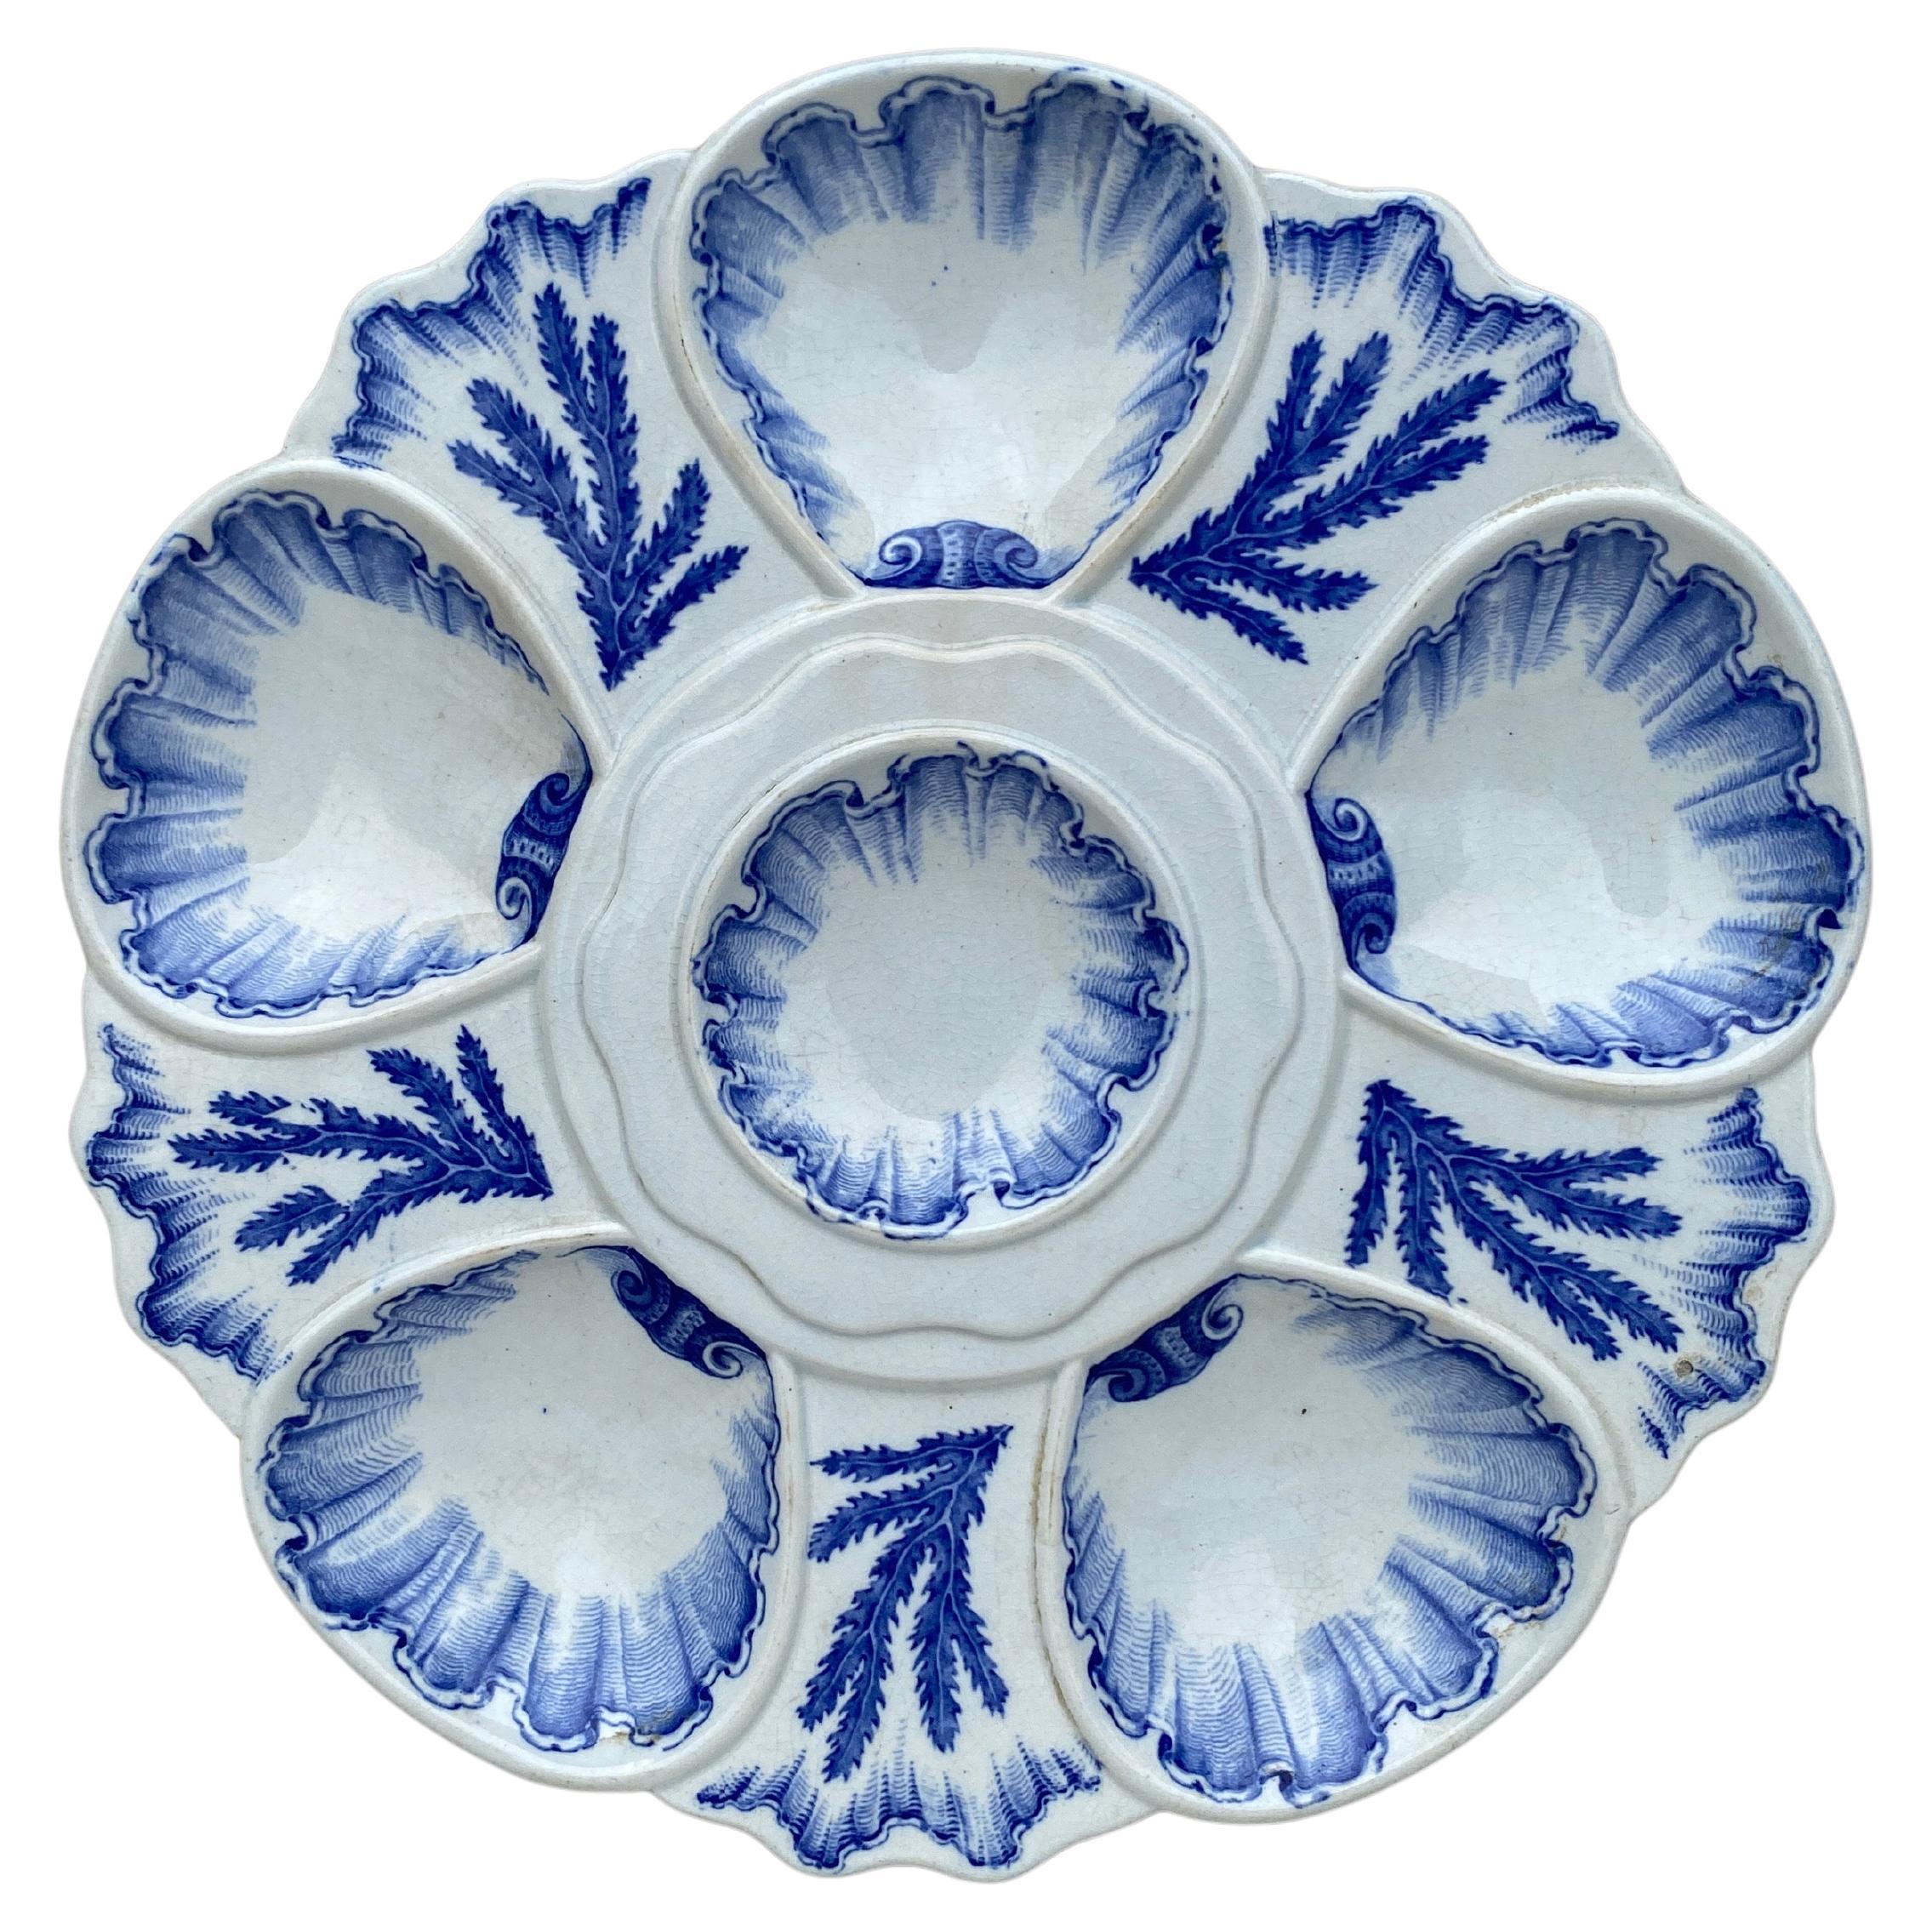 Assiette à huîtres du 19e siècle, bleu et blanc, à base d'algues, Bordeaux